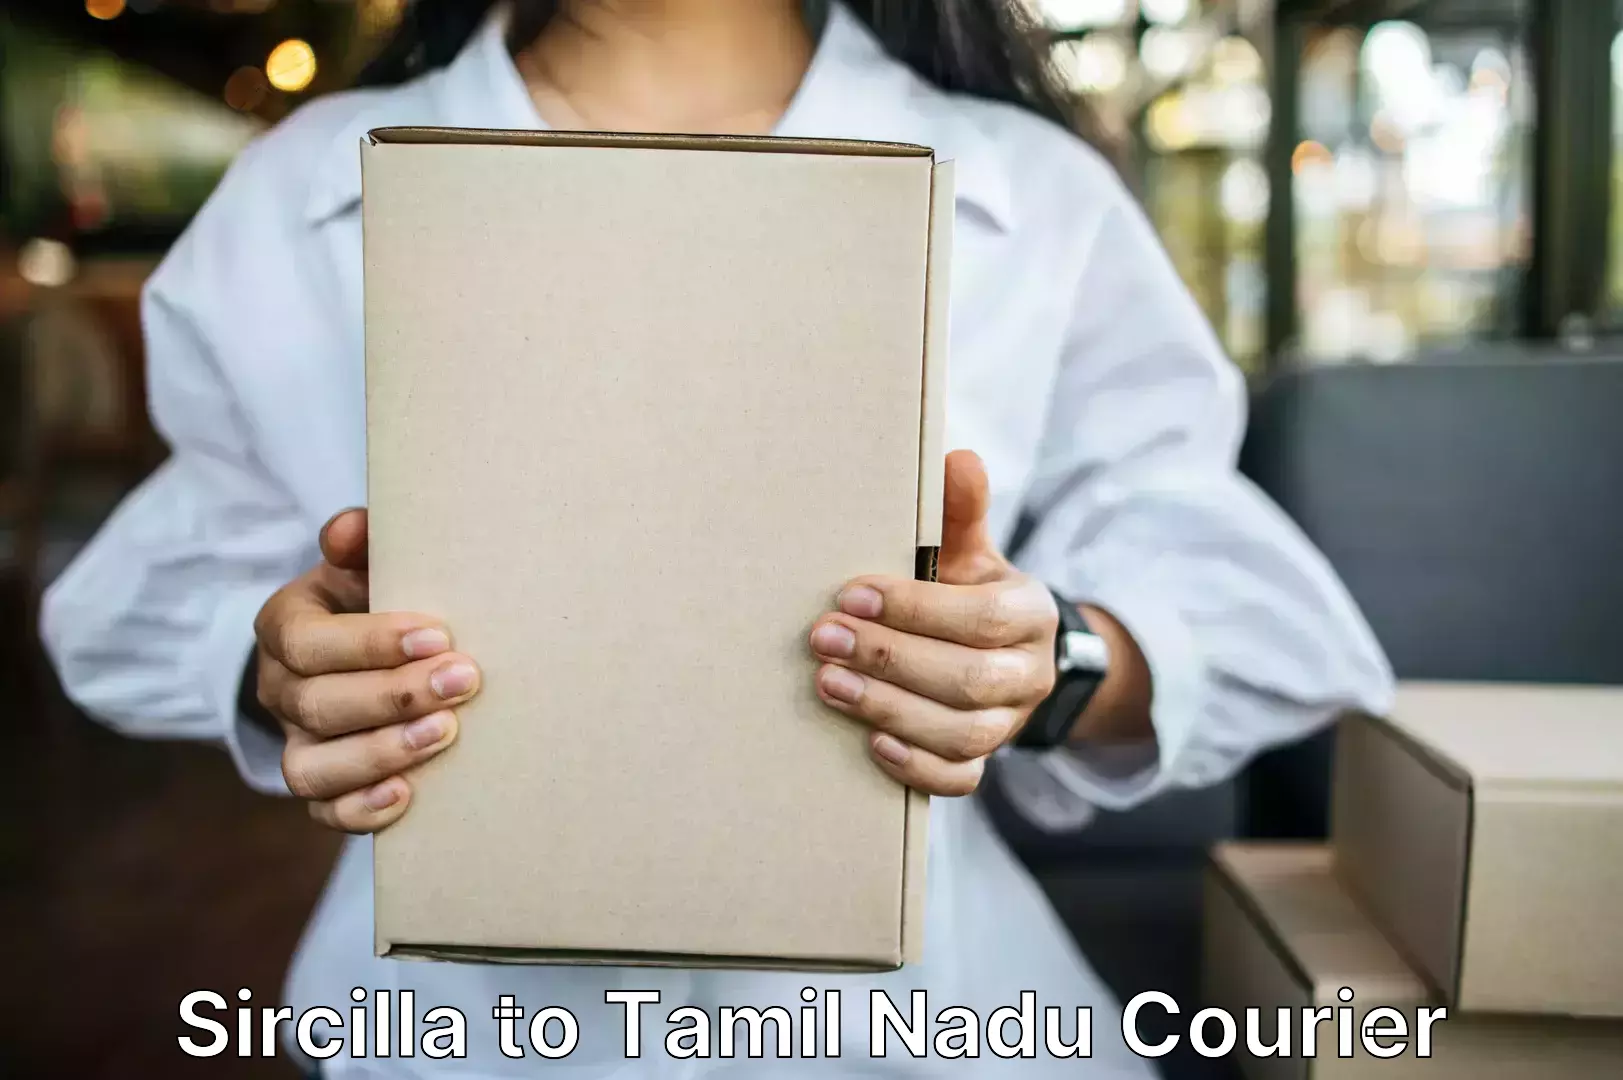 Luggage forwarding service Sircilla to Tamil Nadu